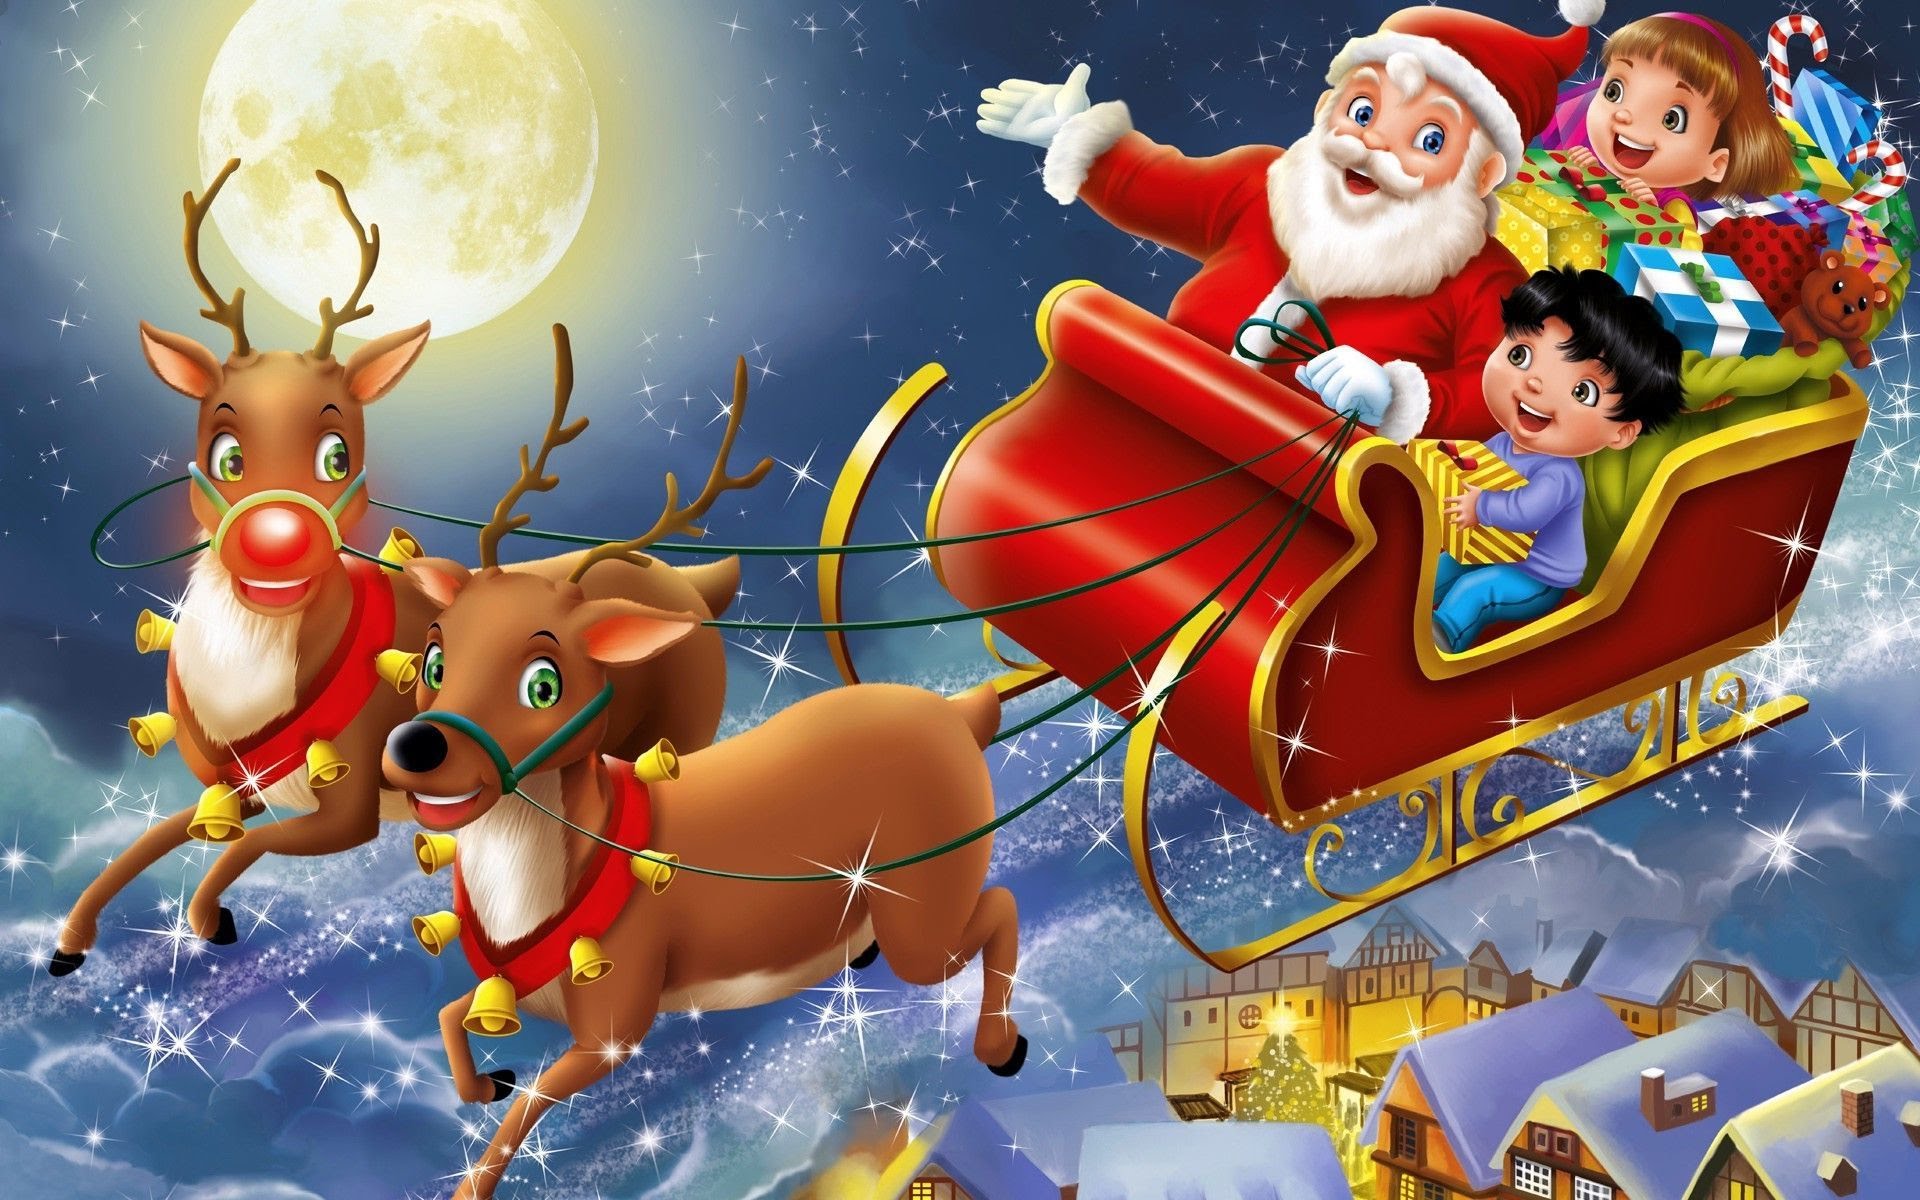 Điều gì làm nên Giáng sinh trọn vẹn hơn? Đó chính là ông già Noel - biểu tượng của mùa lễ này. Hãy tìm kiếm ông già Noel khắp các góc phố và tìm thấy sự vui nhộn và phấn khích của mùa Giáng sinh. Đừng bỏ lỡ ảnh liên quan đến Tìm Ông già Noel hình Giáng sinh vui nhộn!